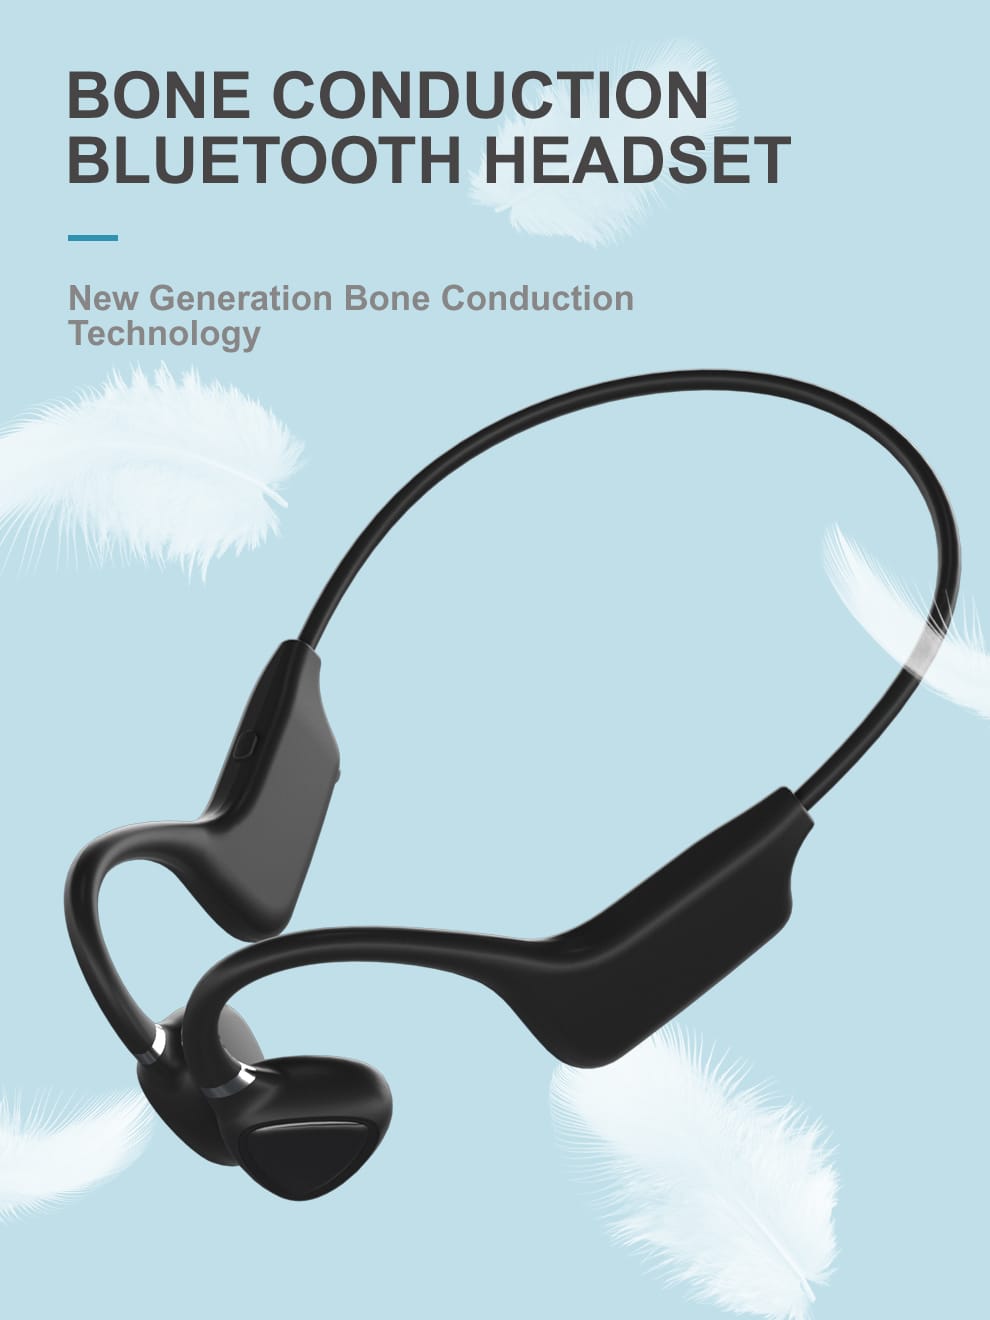 ePP-BC18 Technologie de casque Bluetooth intelligent à conduction osseuse intelligente de qualité militaire, Dernière technologie audio pour casque intelligent Vendu à plus de 32 000 dans le monde